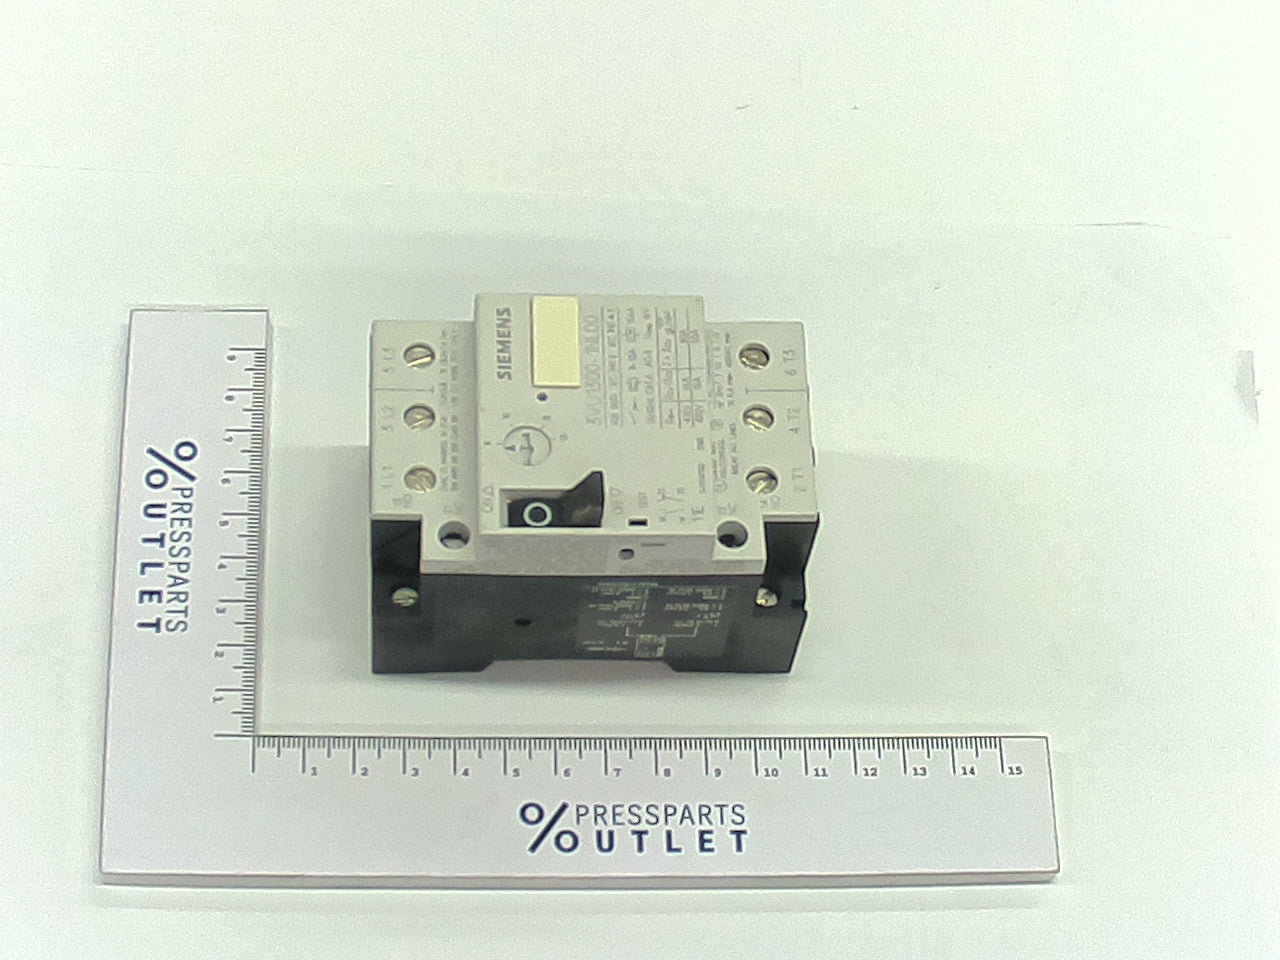 Motor circuit-breake 3VU1300-1NL00 8-13A - M2.144.3471/ - Motorschutzschalt. 3VU1300-1NL00 8-13A